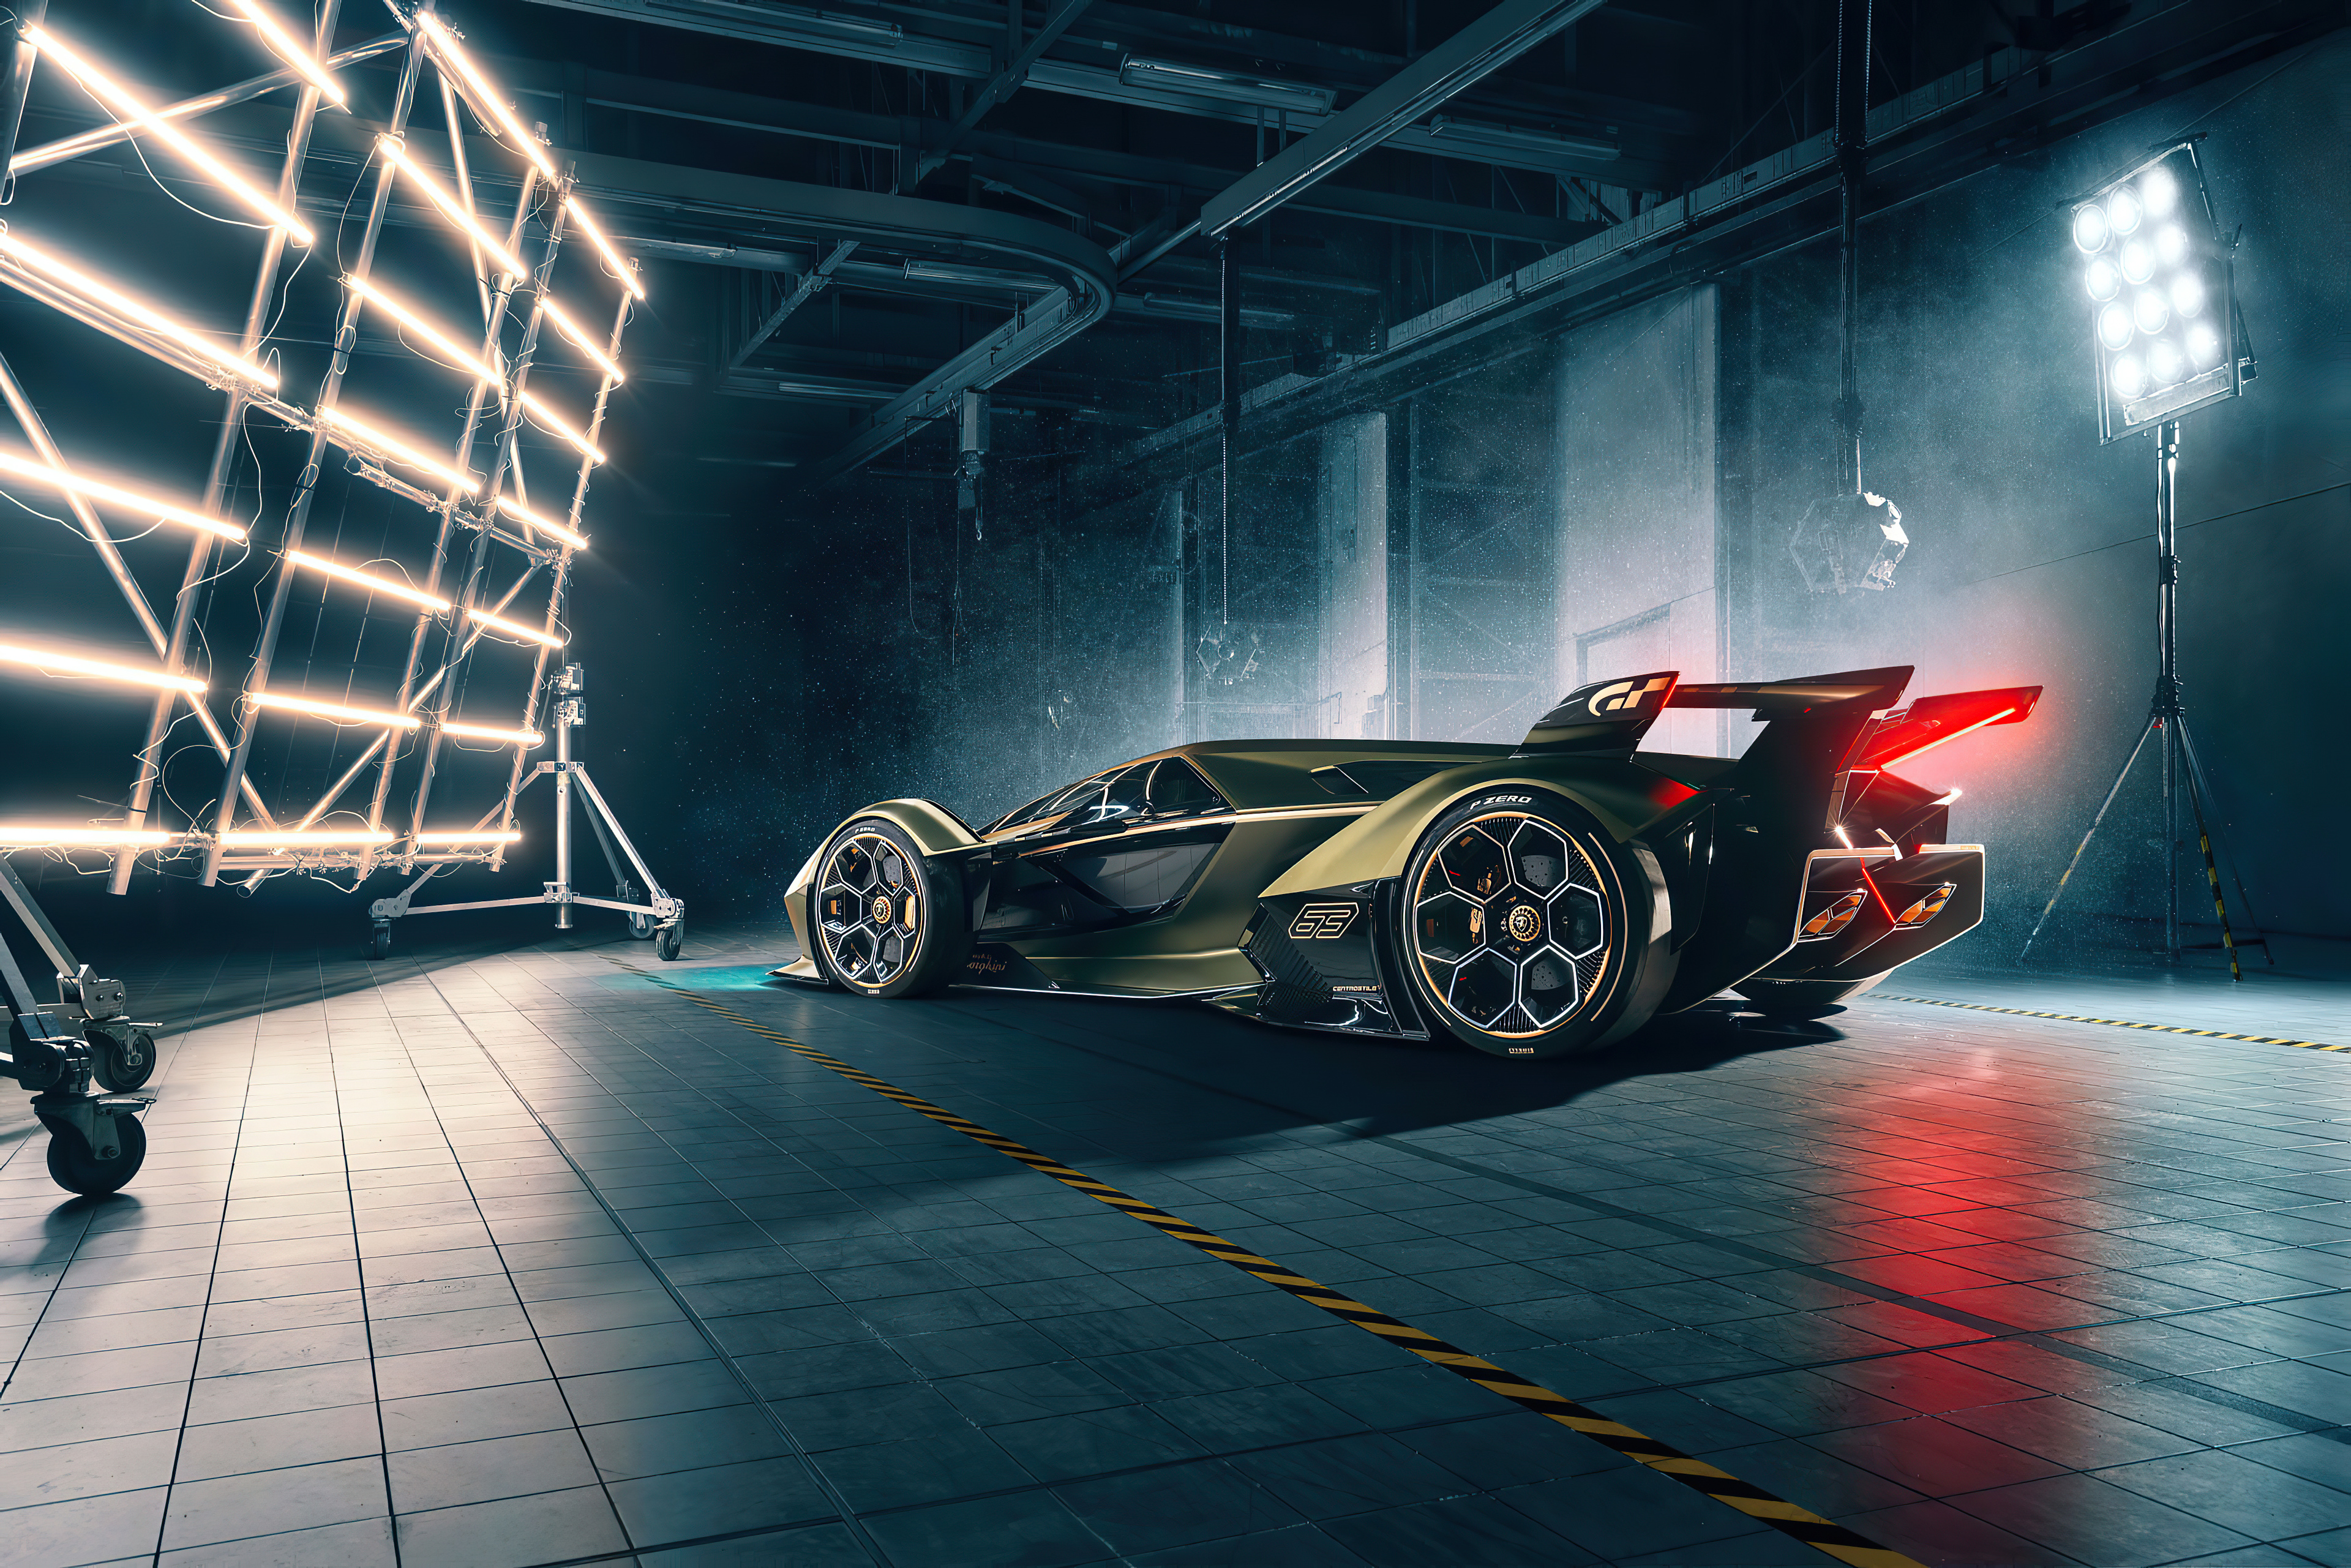 Lambo V12 Vision Gran Turismo, HD Cars, 4k Wallpapers, Images